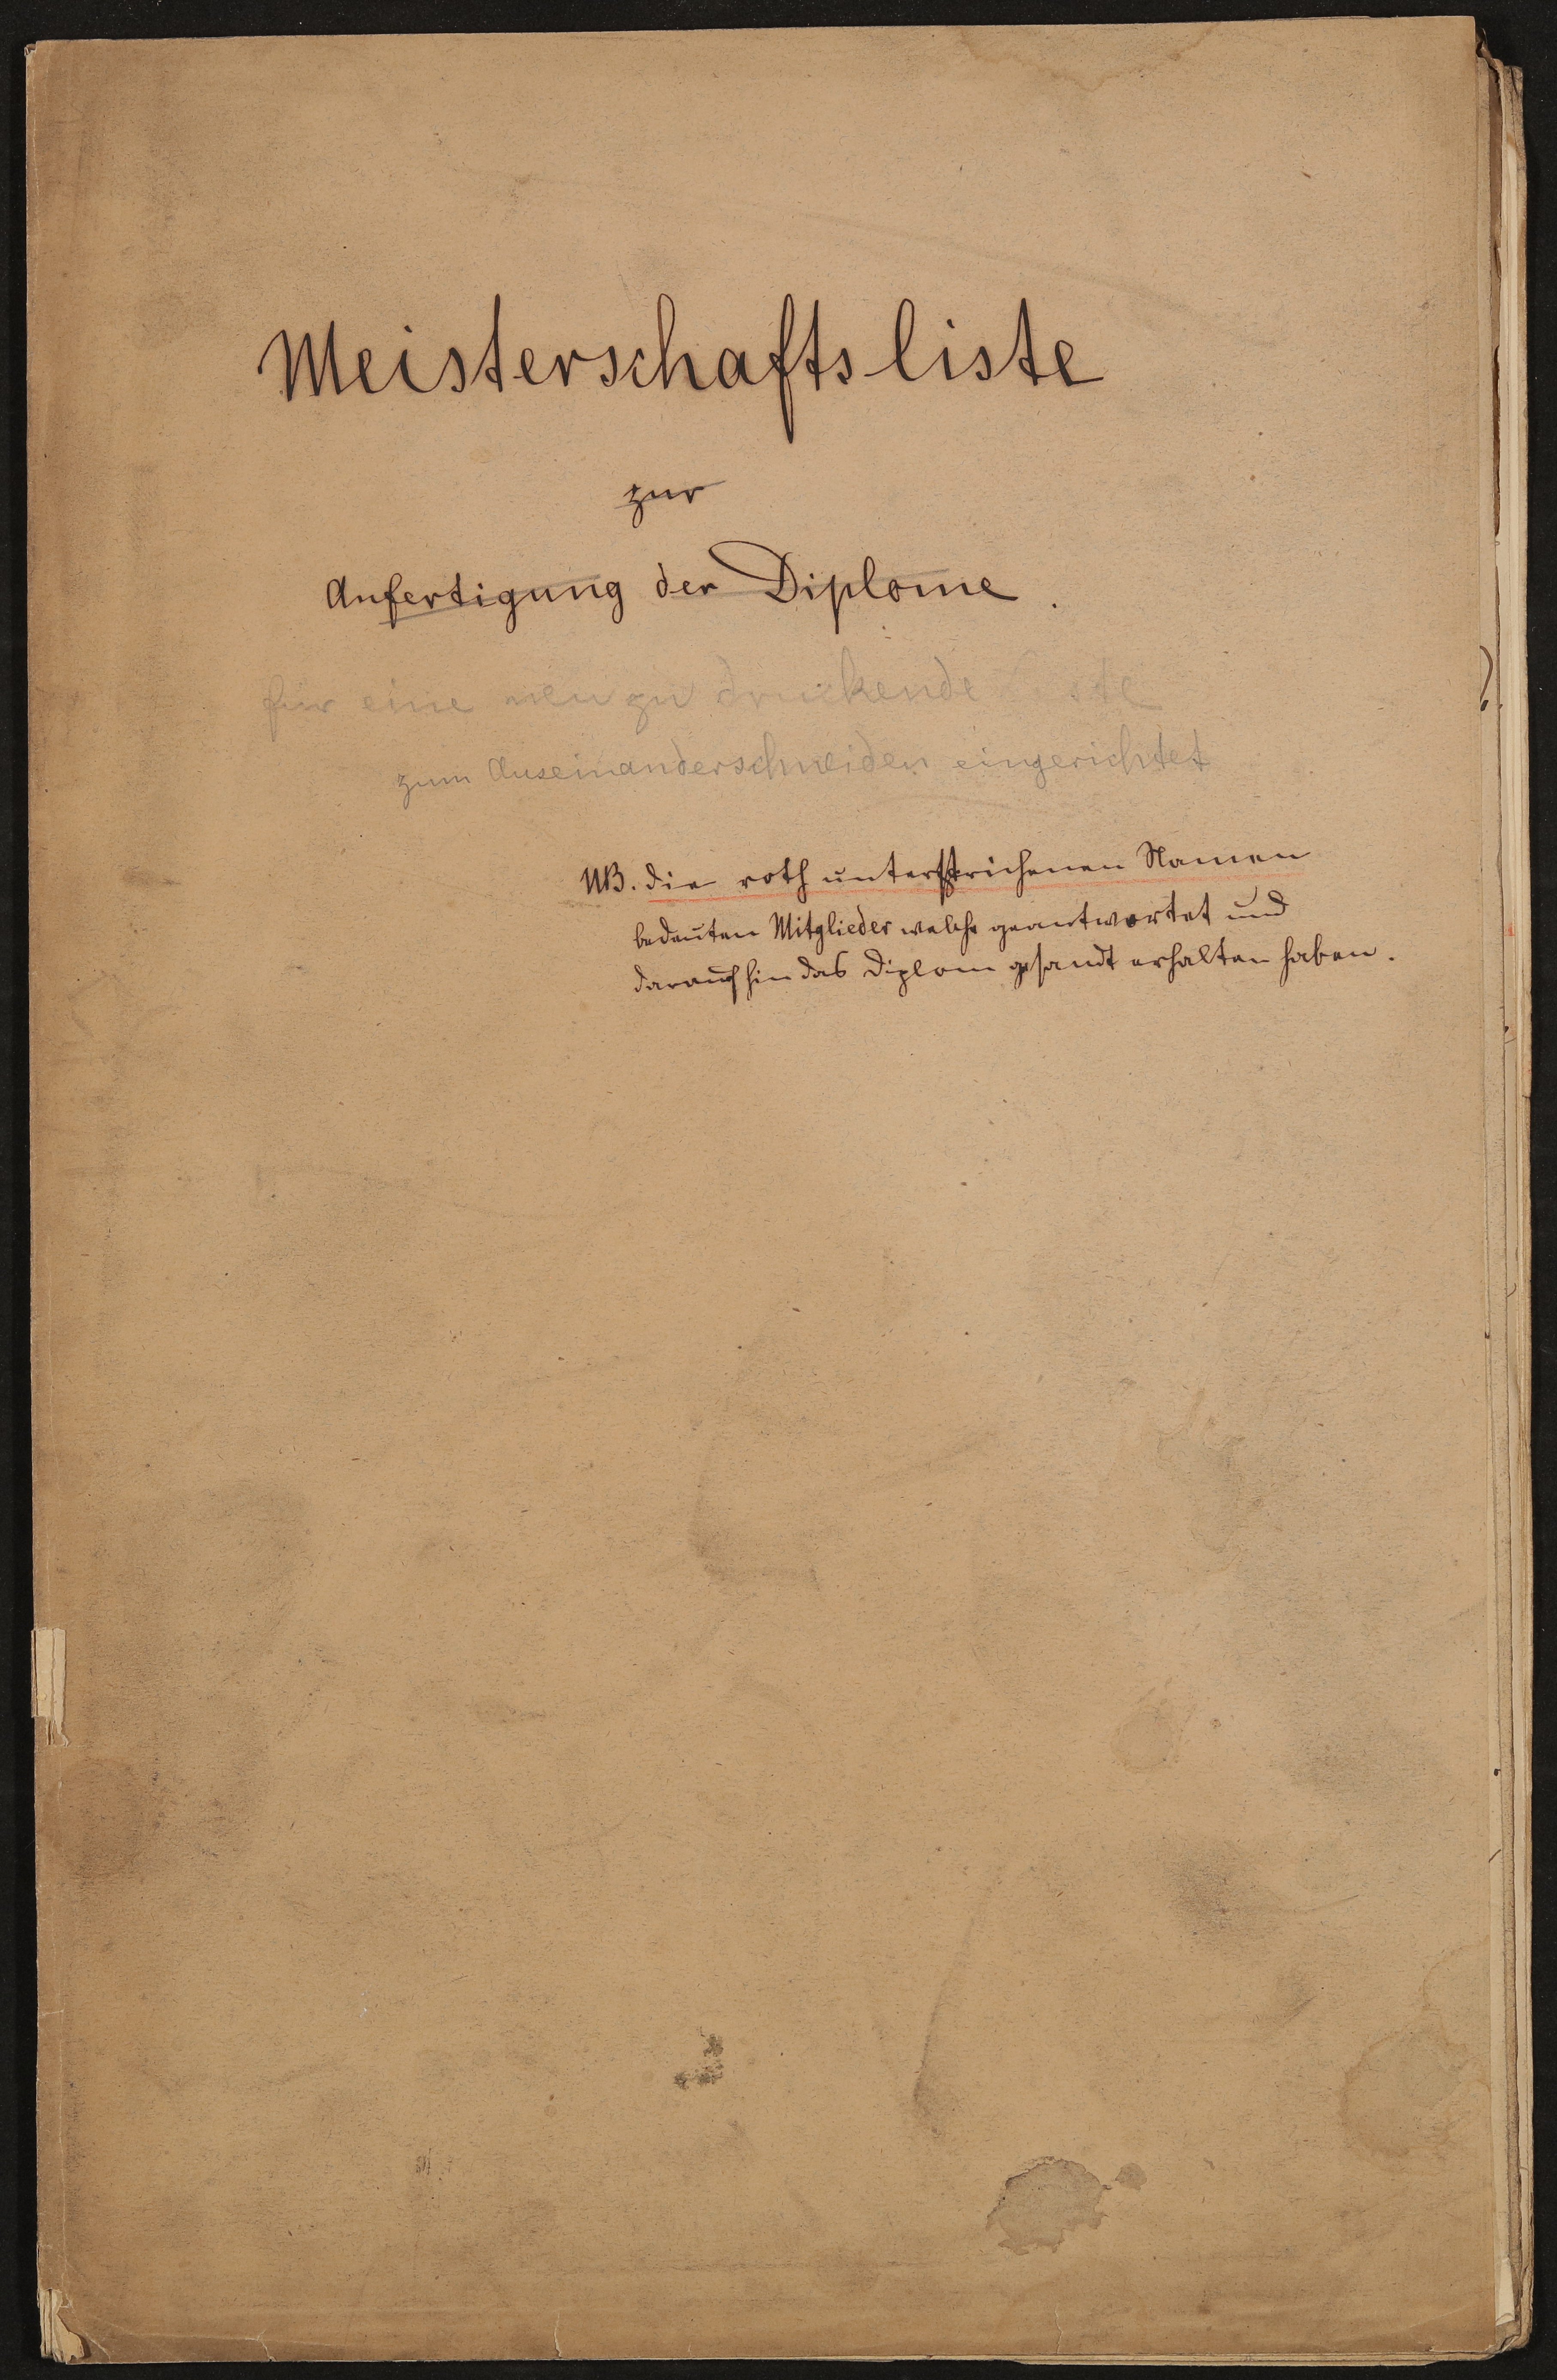 Meisterschaftsliste zur Anfertigung der Diplome, vermutlich 1866 (Freies Deutsches Hochstift / Frankfurter Goethe-Museum Public Domain Mark)